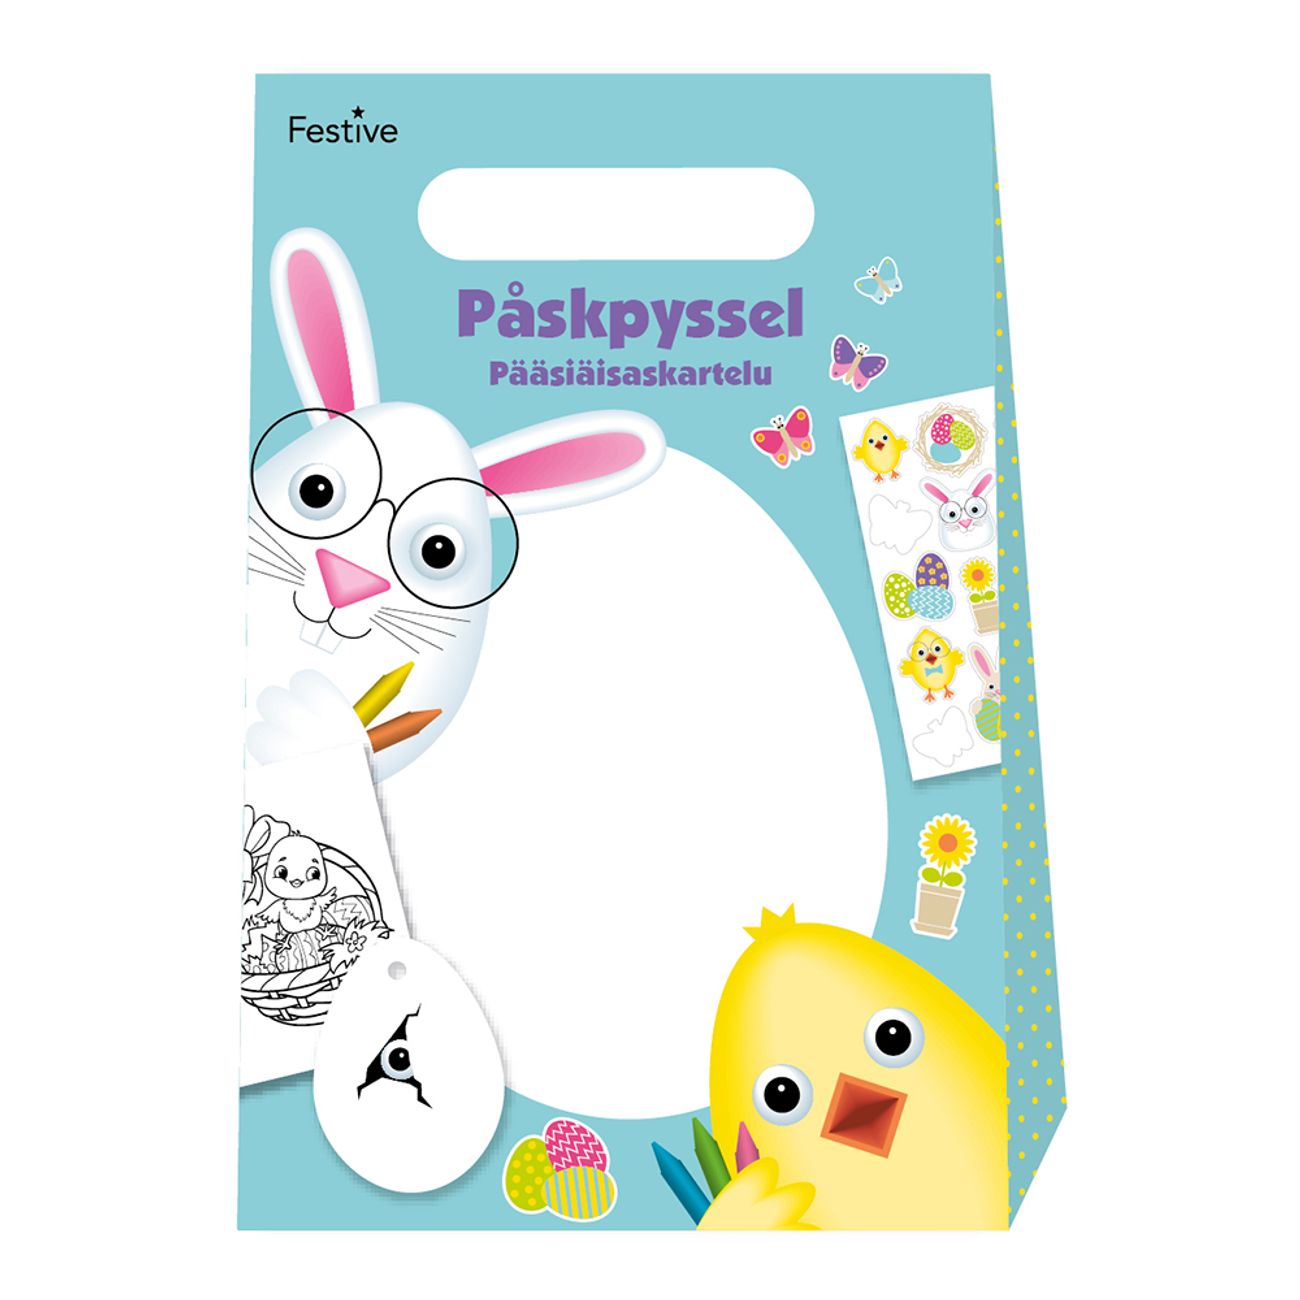 paskpyssel-kit-83317-1